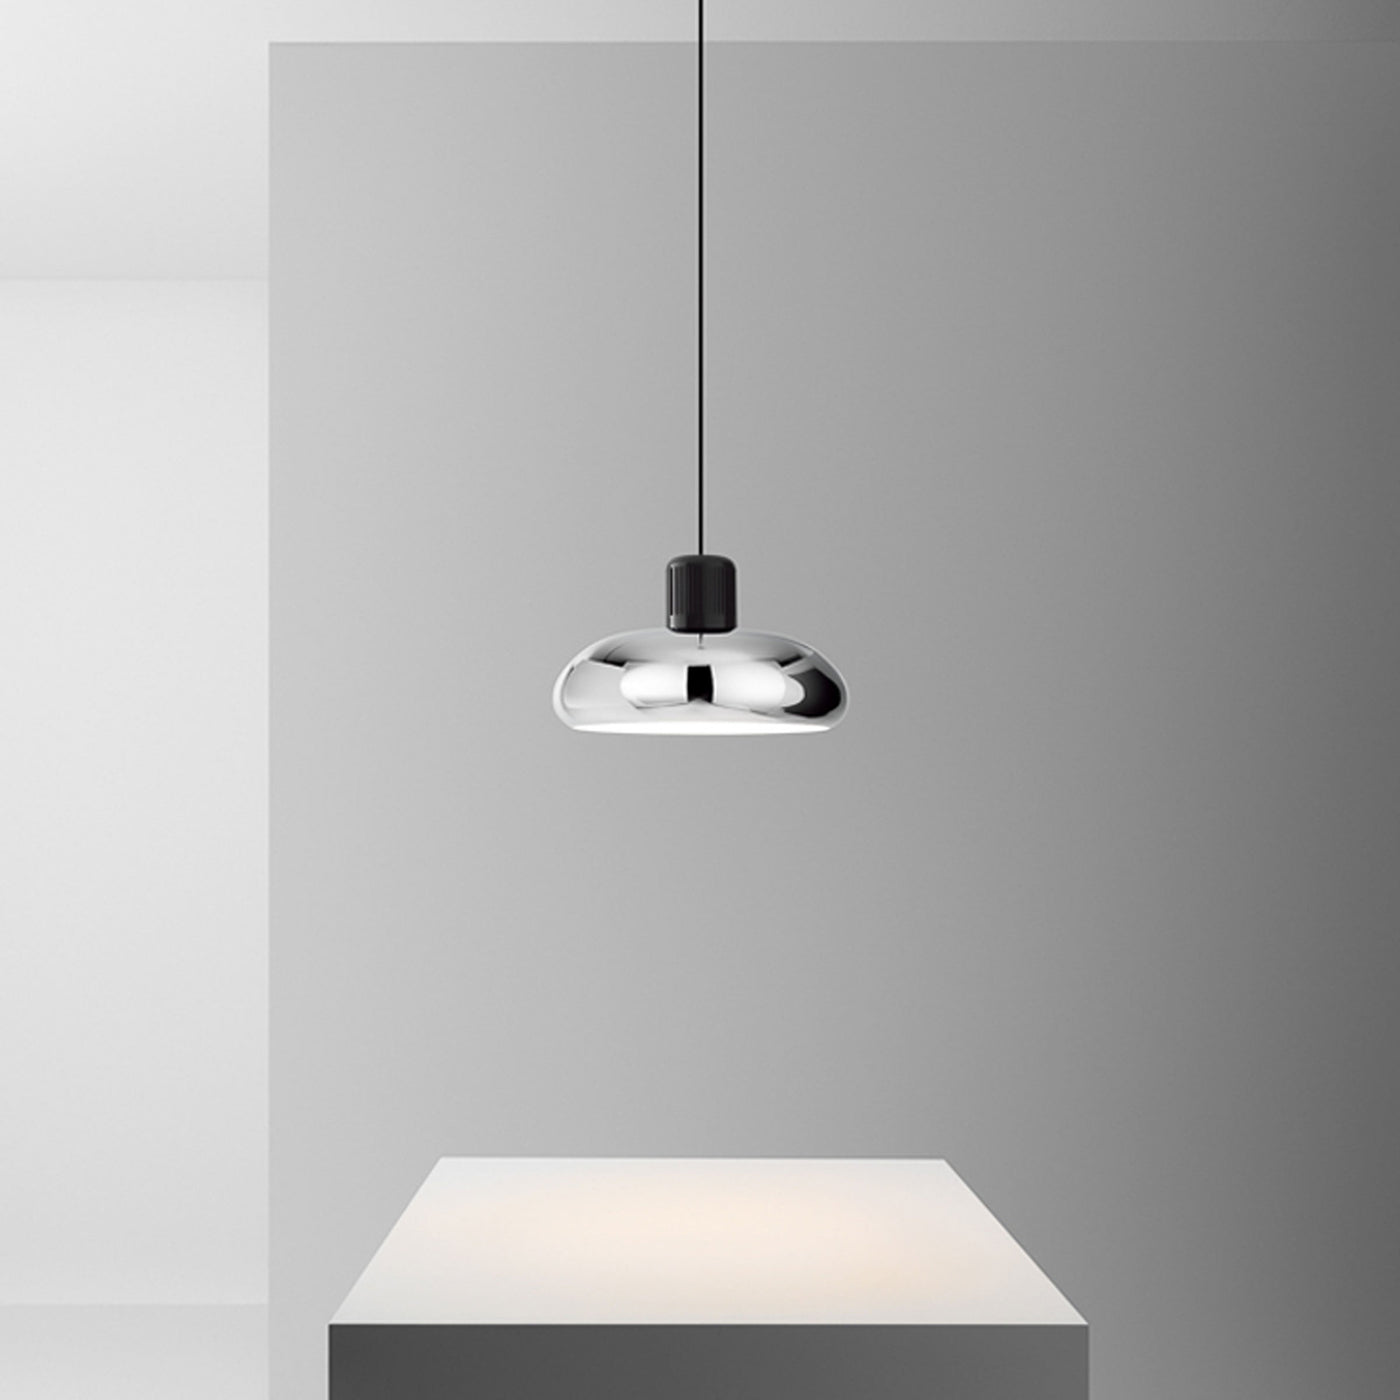 Suspension Lamp TREPIÙ by Gae Aulenti & Livio Castiglioni for Stilnovo 01